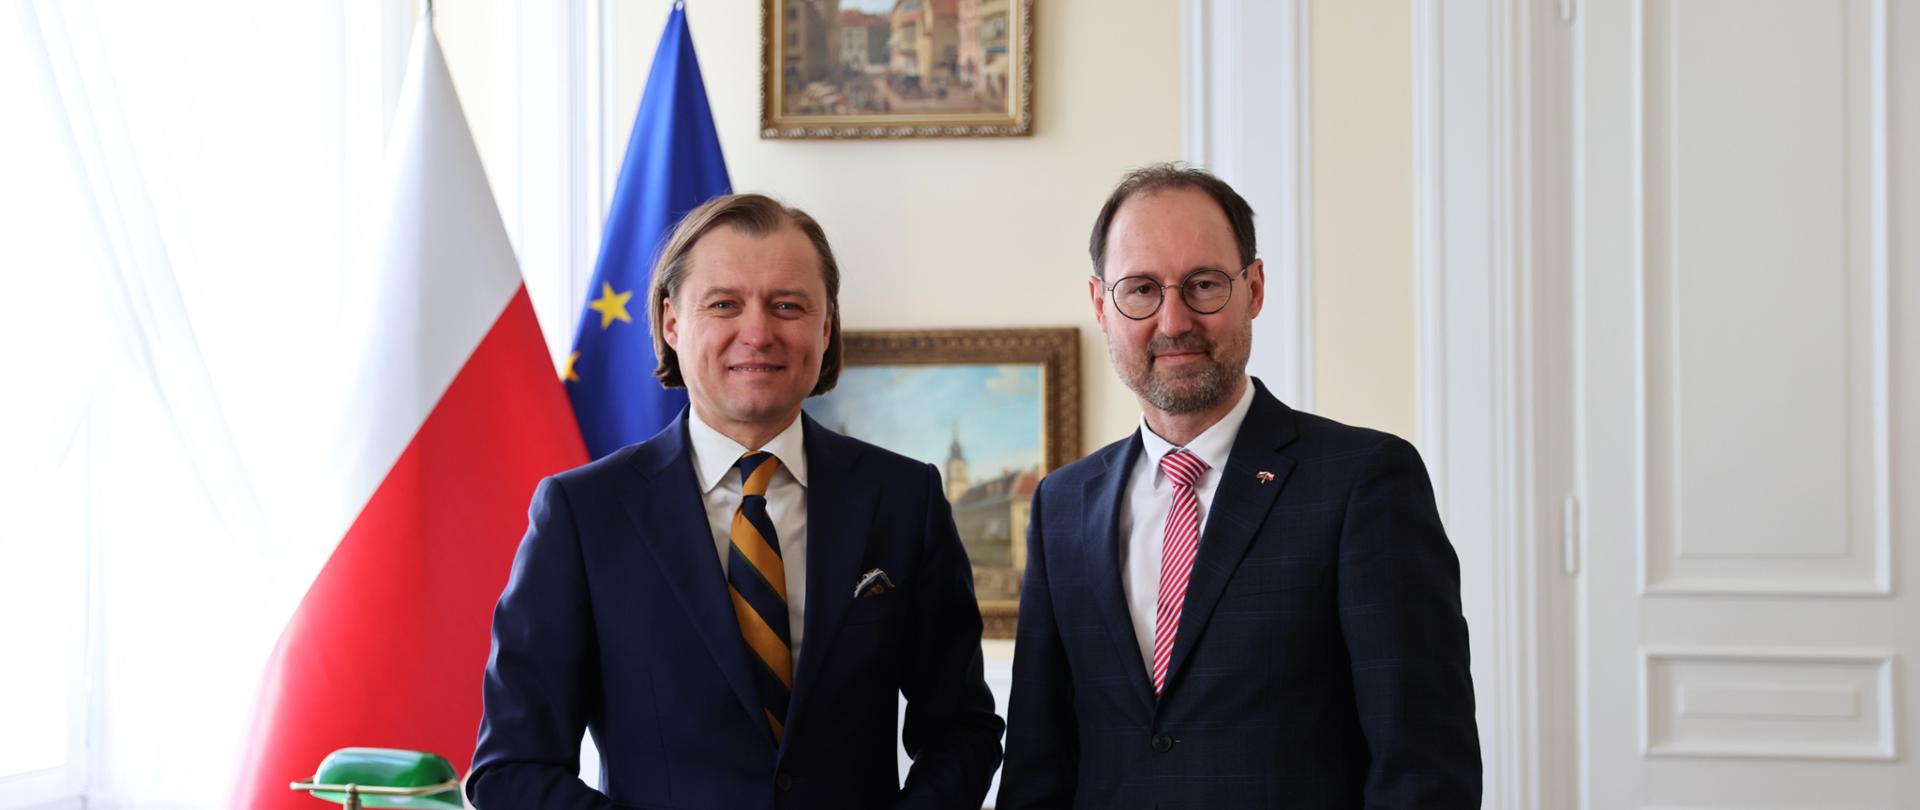 Na zdjęciu dwóch mężczyzn. W tle flaga Polski oraz Unii Europejskiej 